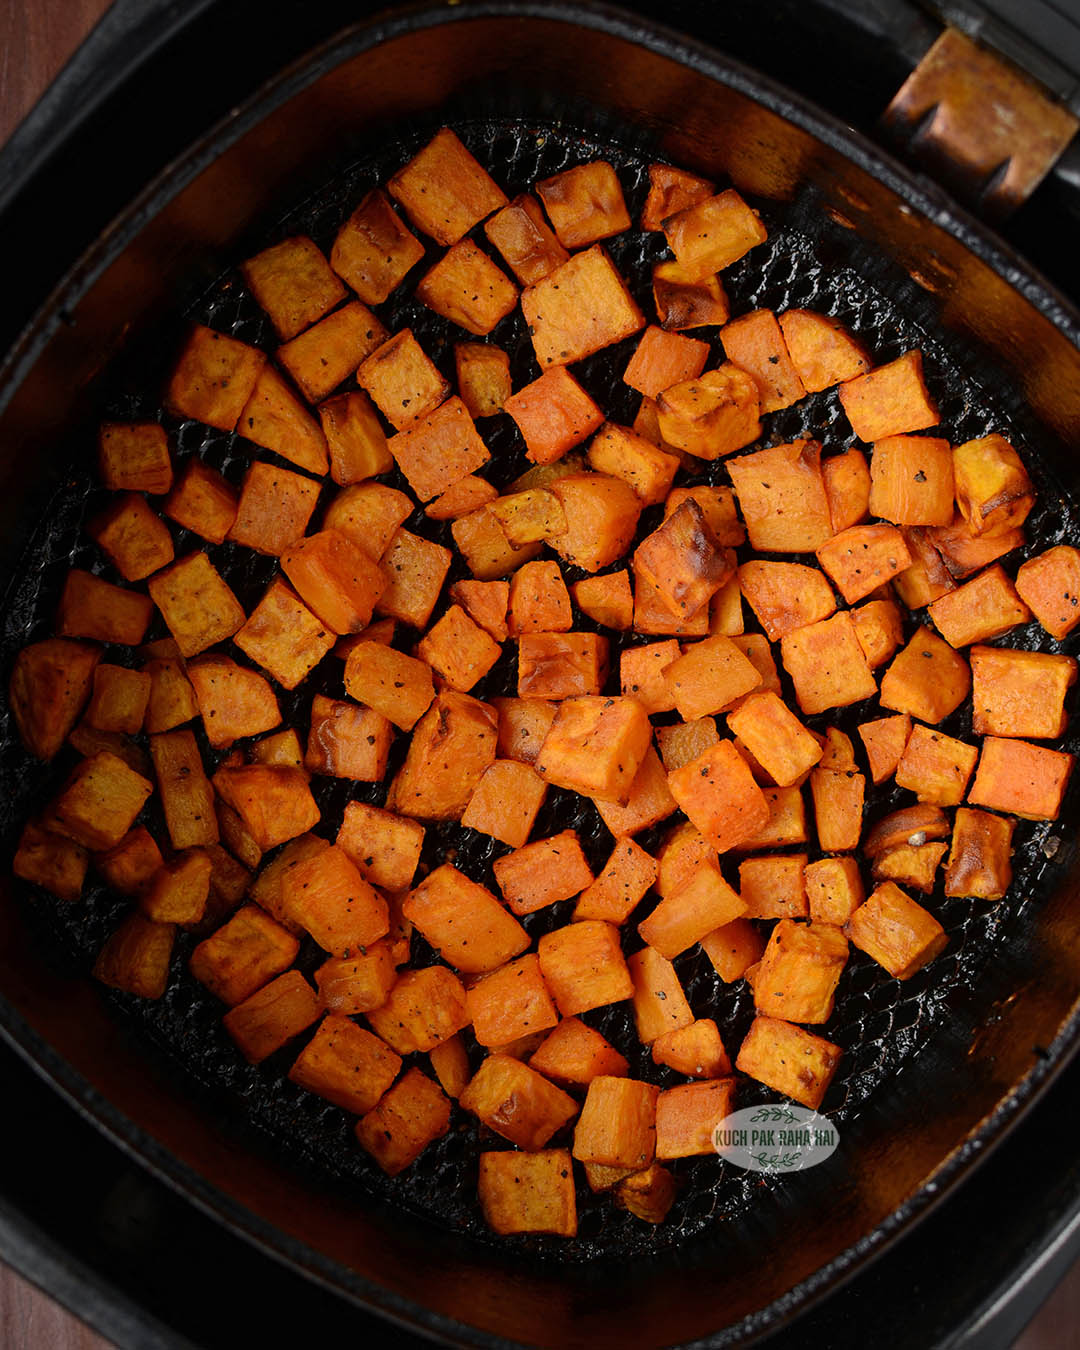 Cubed sweet potatoes in air fryer.